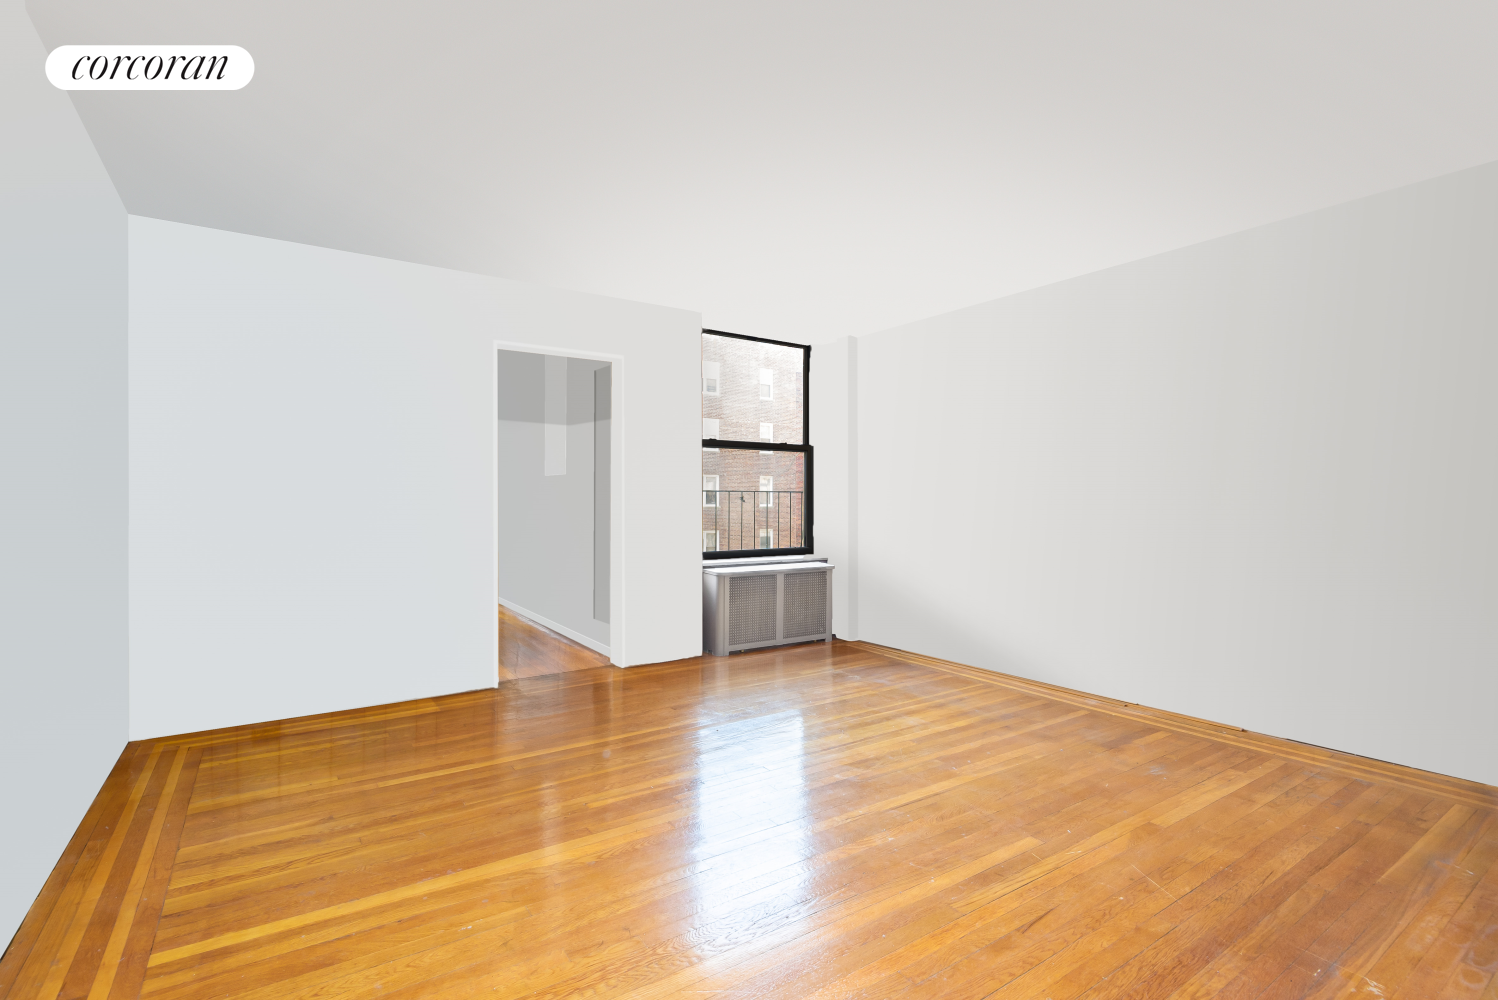 35-22 80th Street, Jackson Heights, Queens, New York - 1 Bedrooms  
1 Bathrooms  
3 Rooms - 